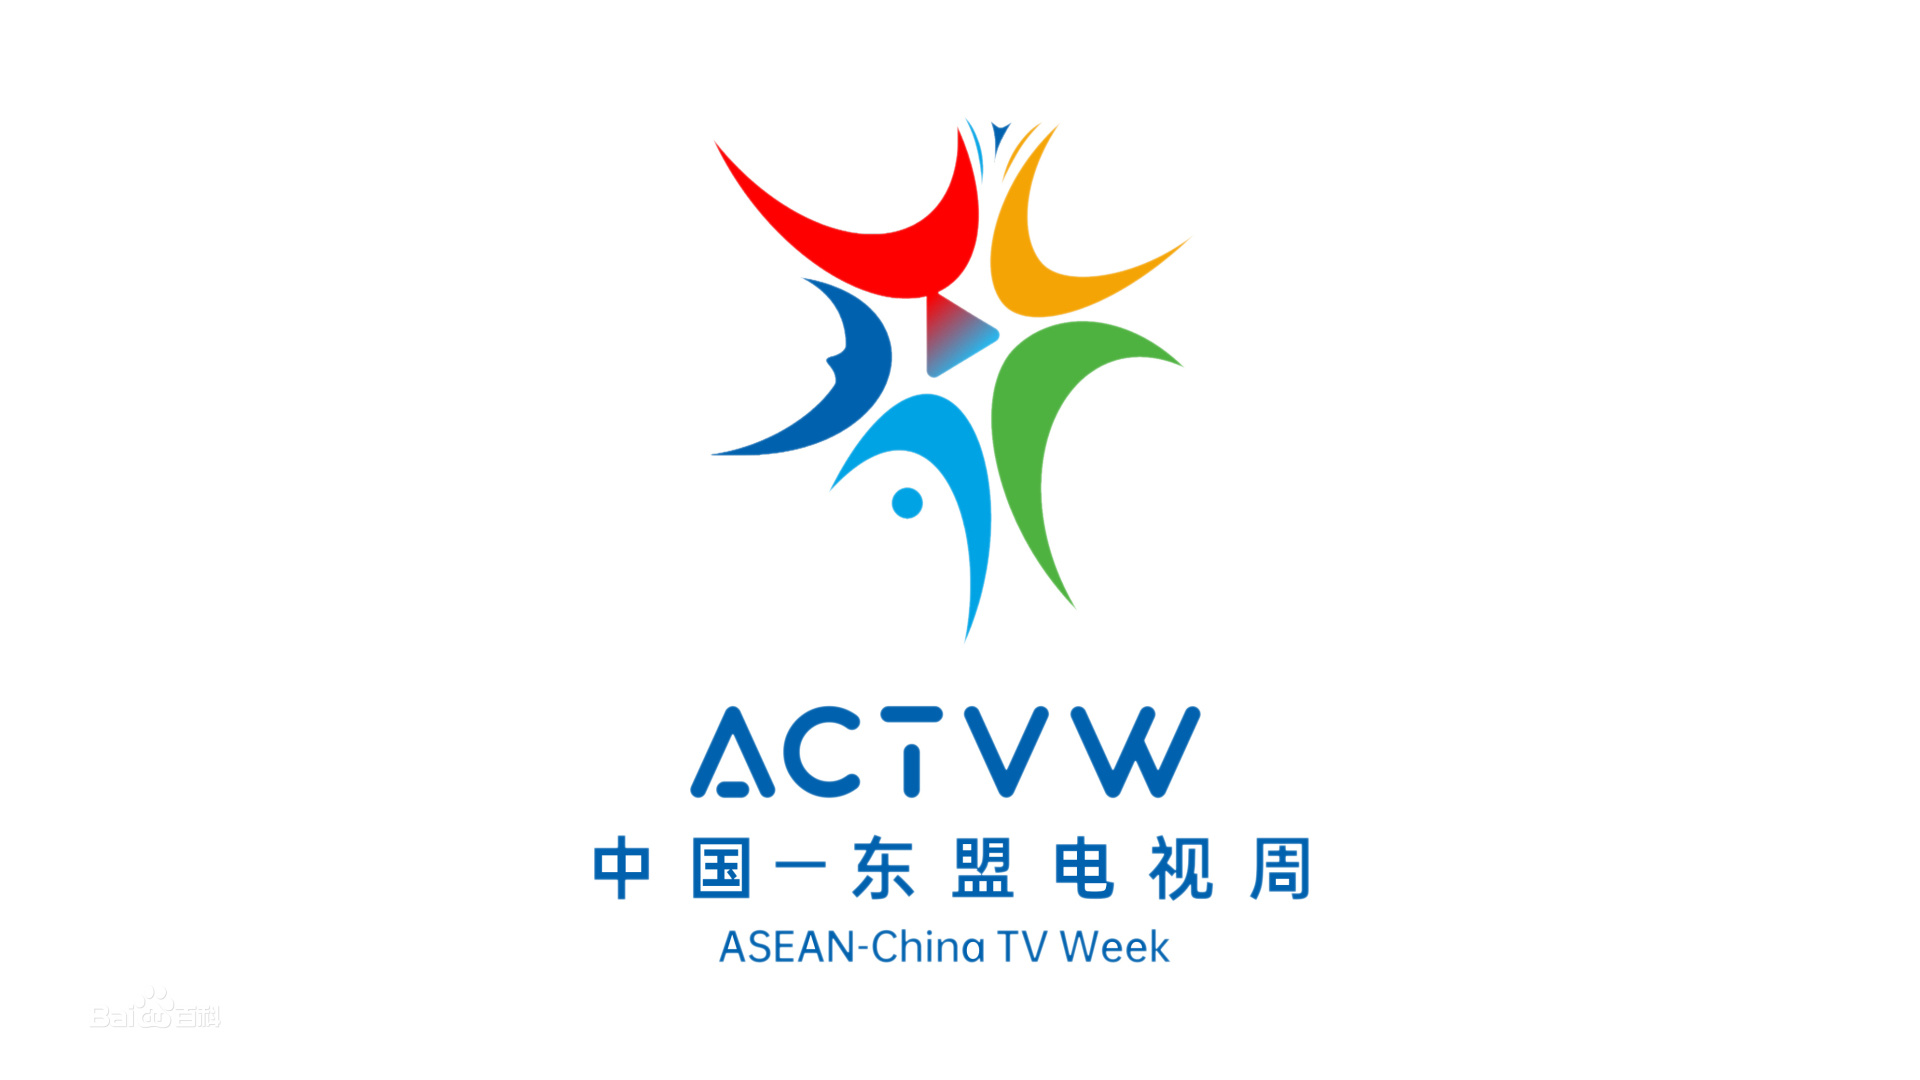 成都永利集团304am登录参加第二届中国东盟电视周视听传播峰会，合作共赢